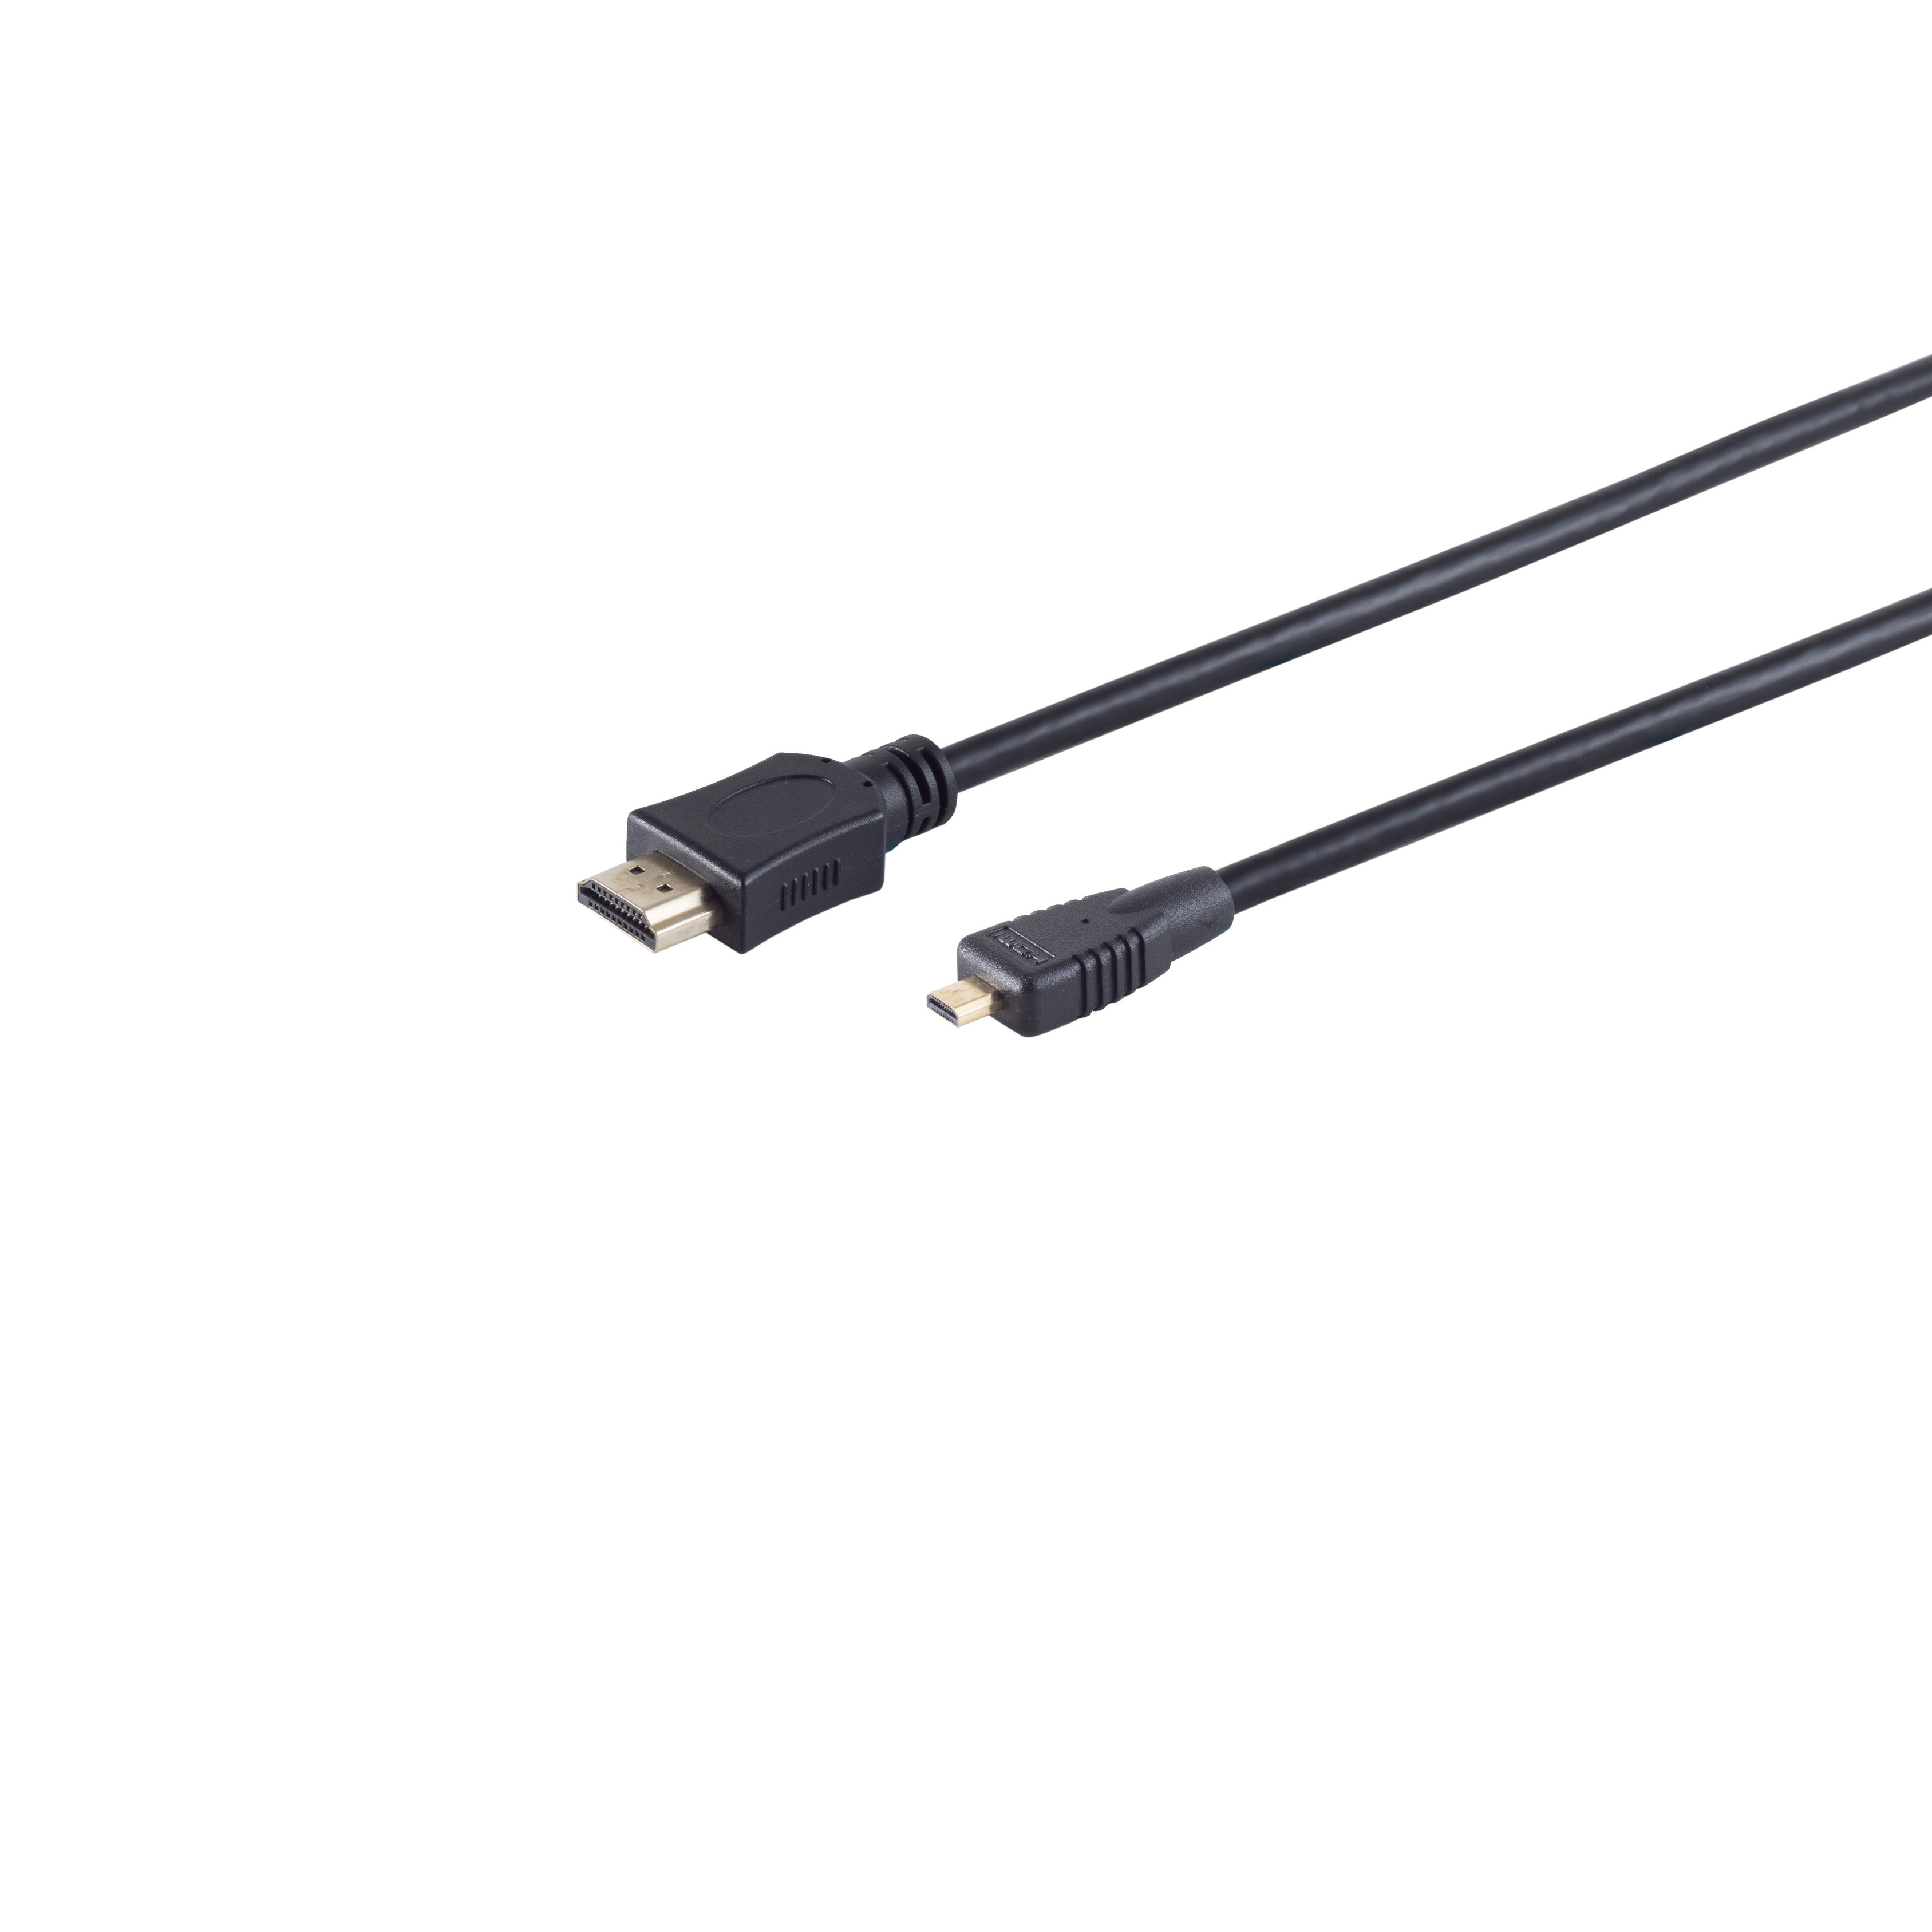 S/CONN MAXIMUM CONNECTIVITY verg micro A-Stecker/HDMI D-Stecker 2m HEAC HDMI Kabel HDMI